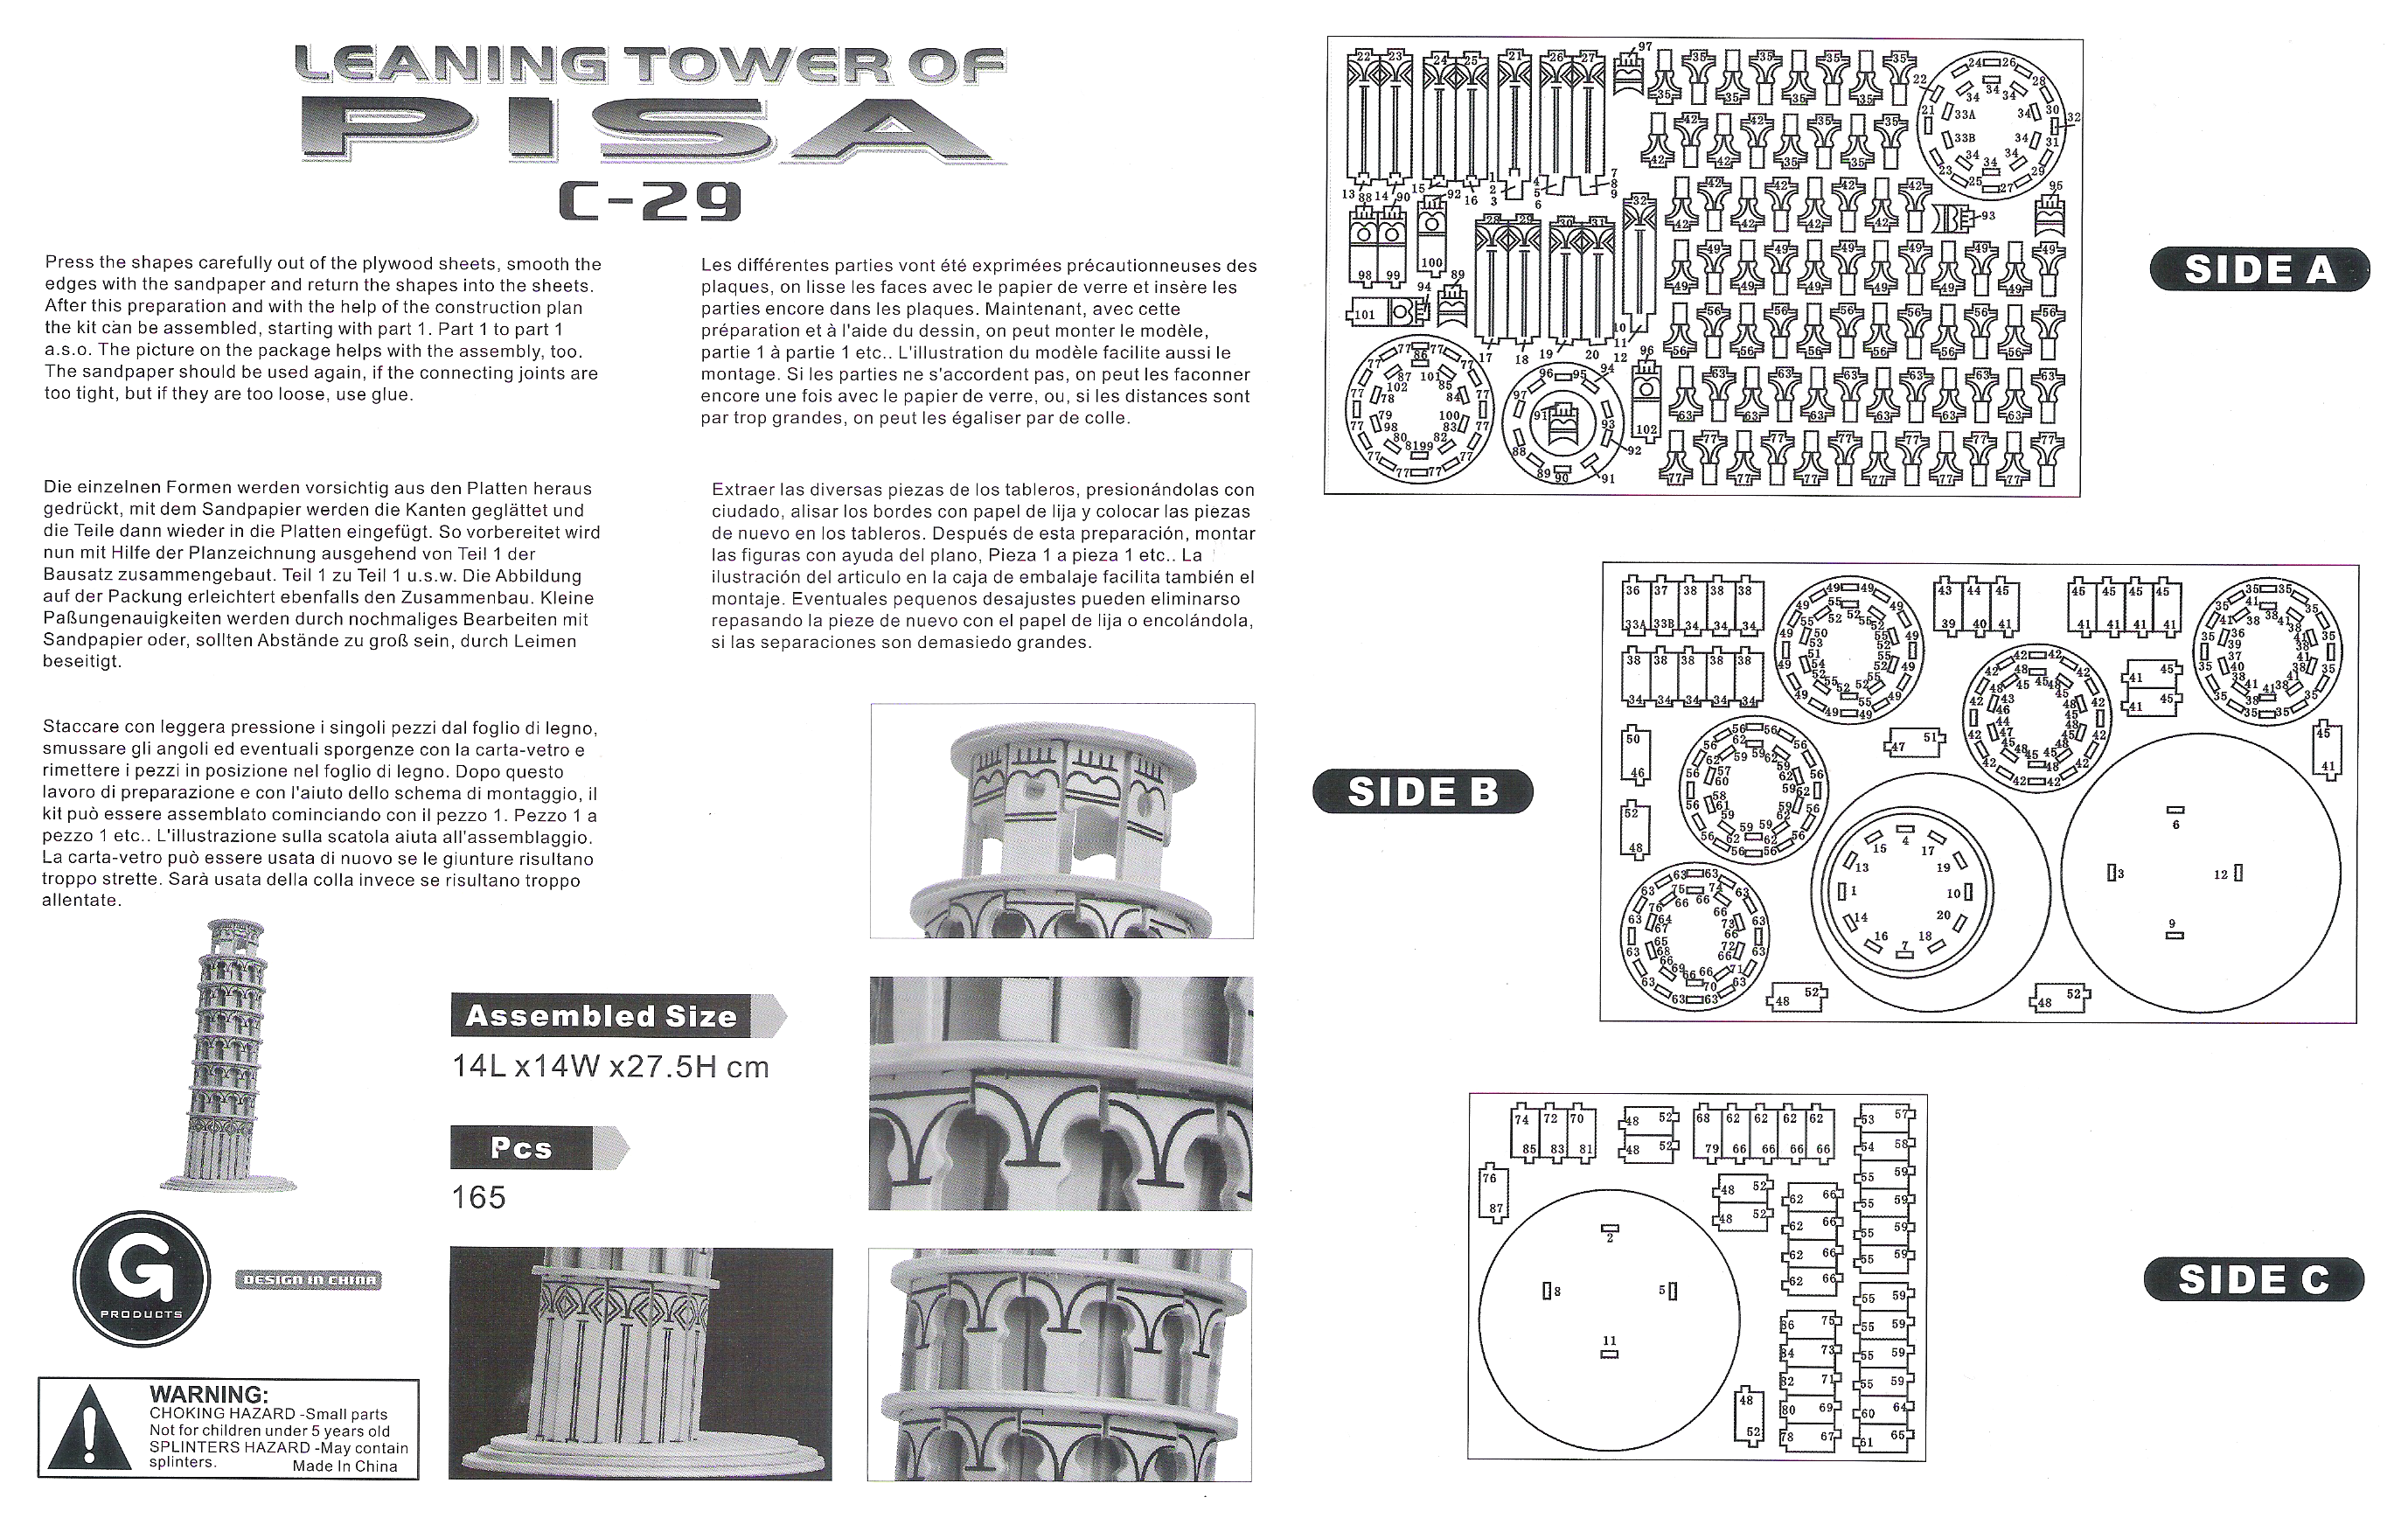 Torre de Pisa 3